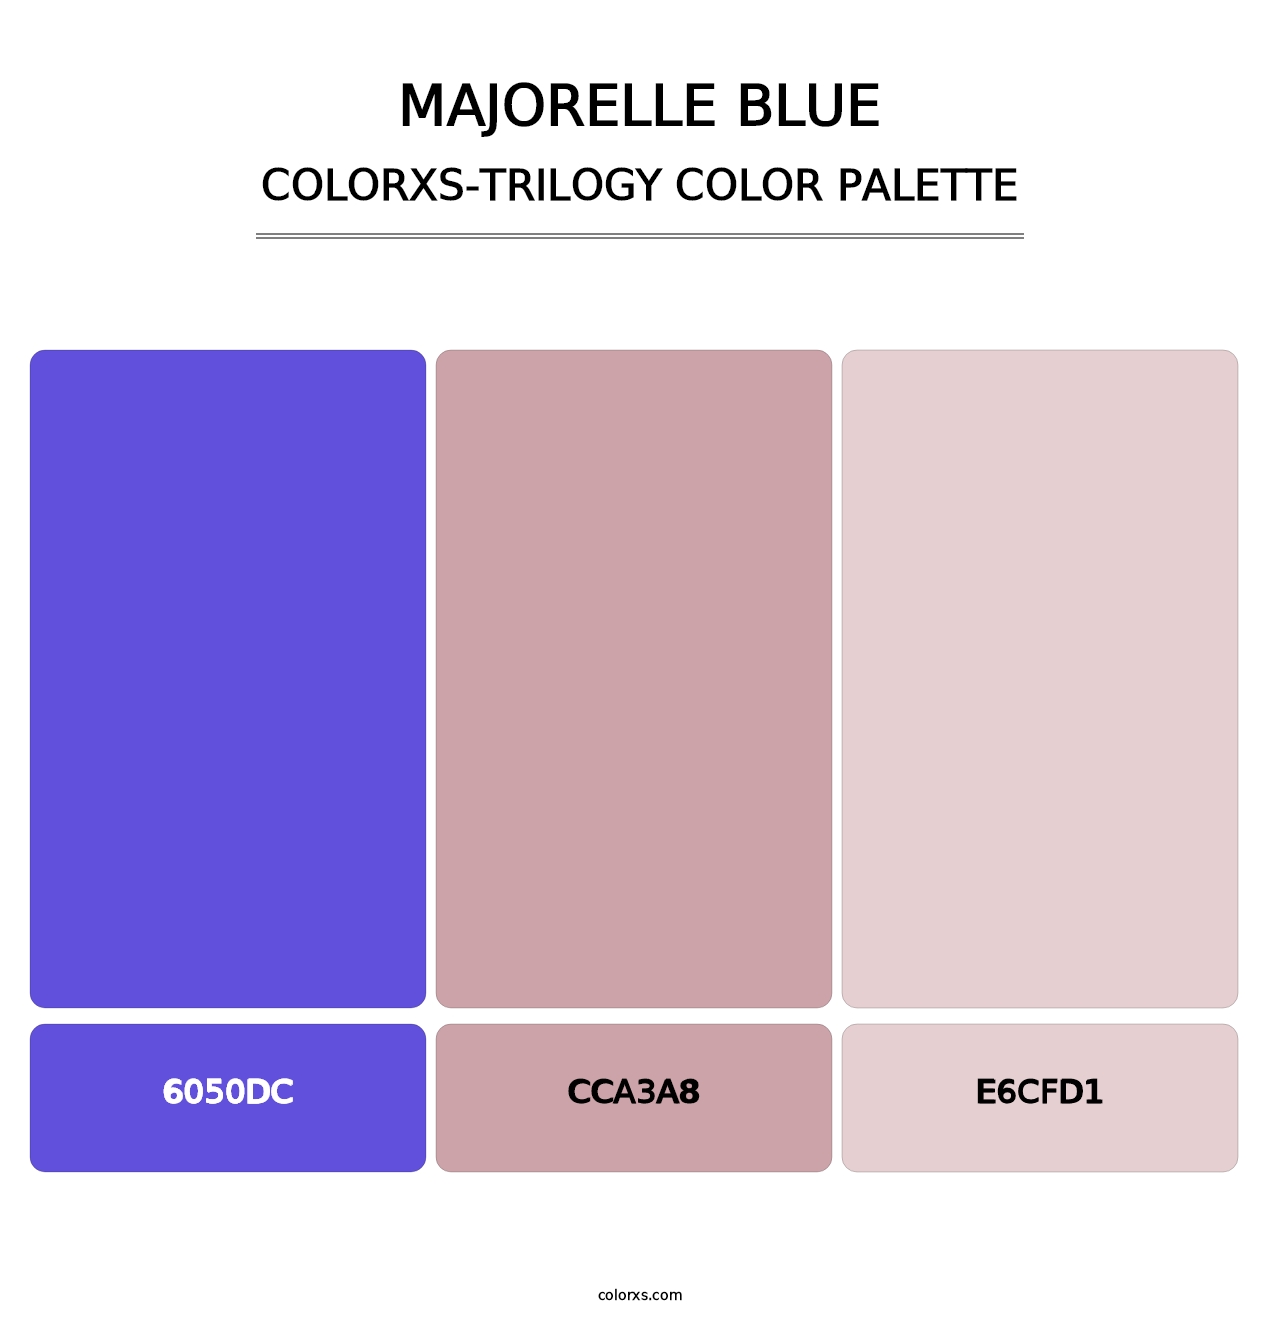 Majorelle Blue - Colorxs Trilogy Palette